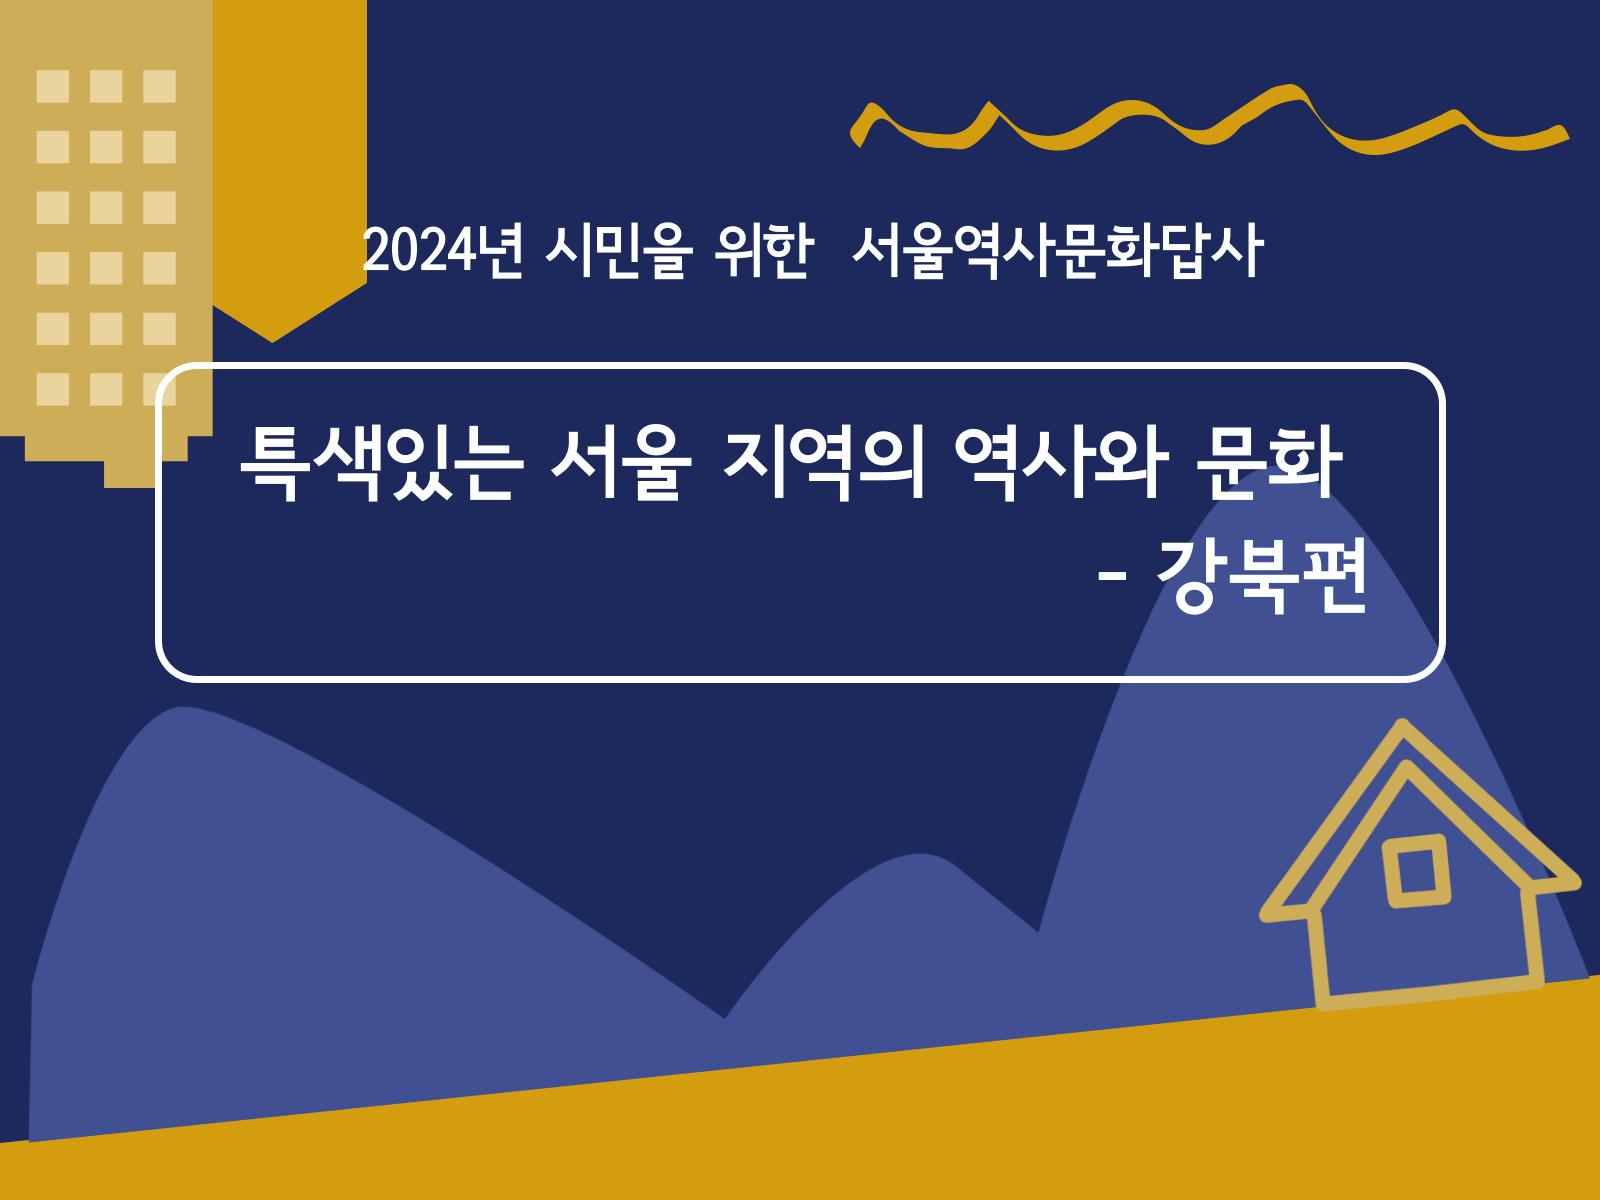 2024년 서울역사문화답사 특색있는 서울 지역의 역사와 문화 - 강북편 (전체일정 및 코스 안내)